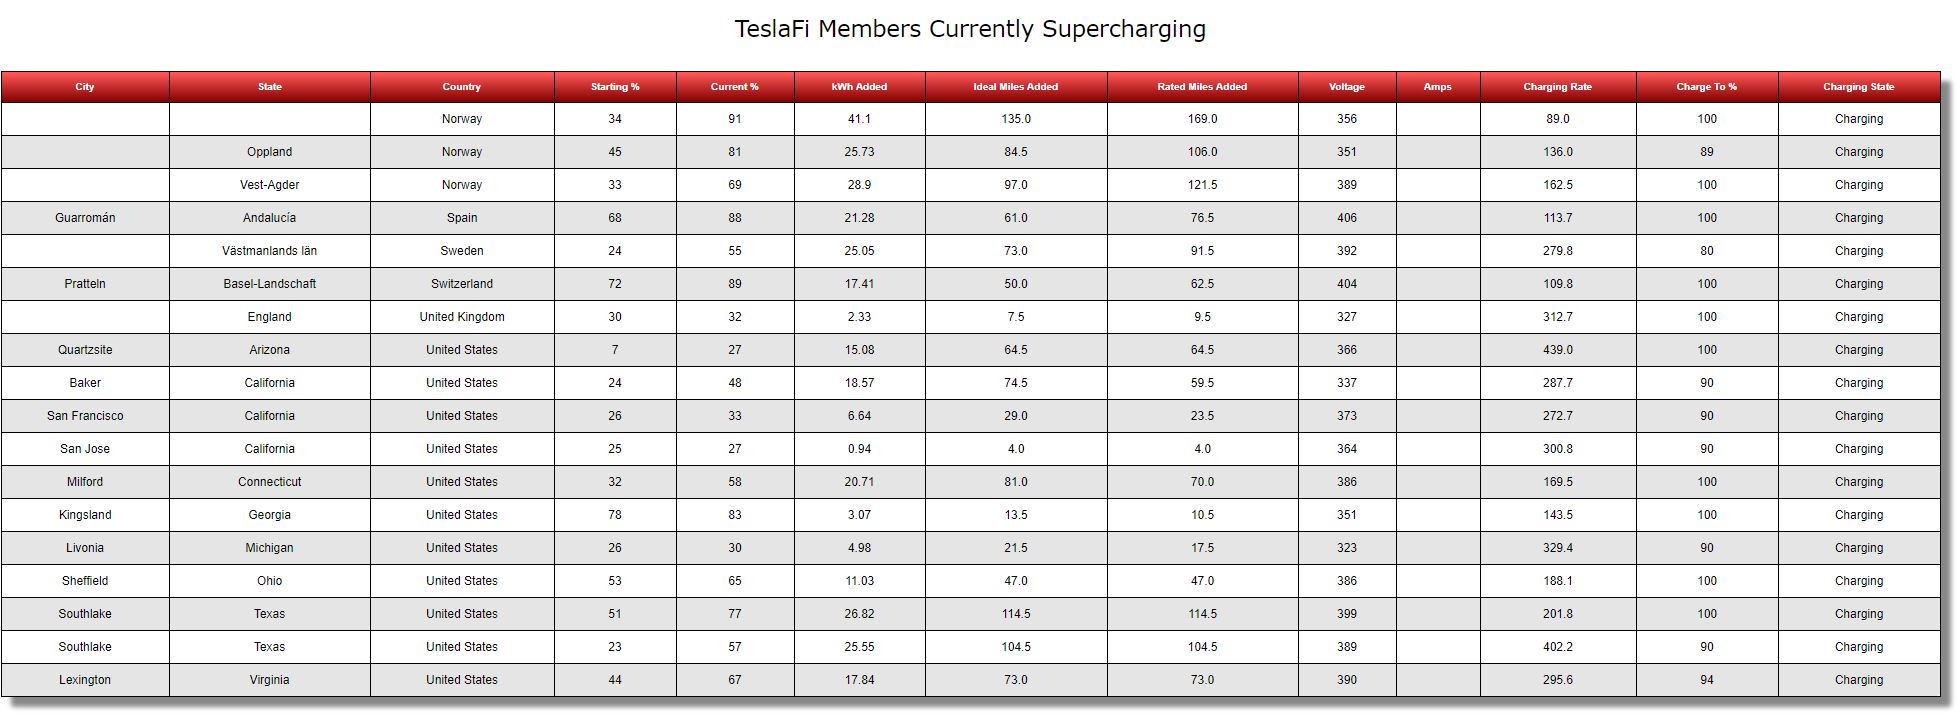 teslafi_supercharging.jpg